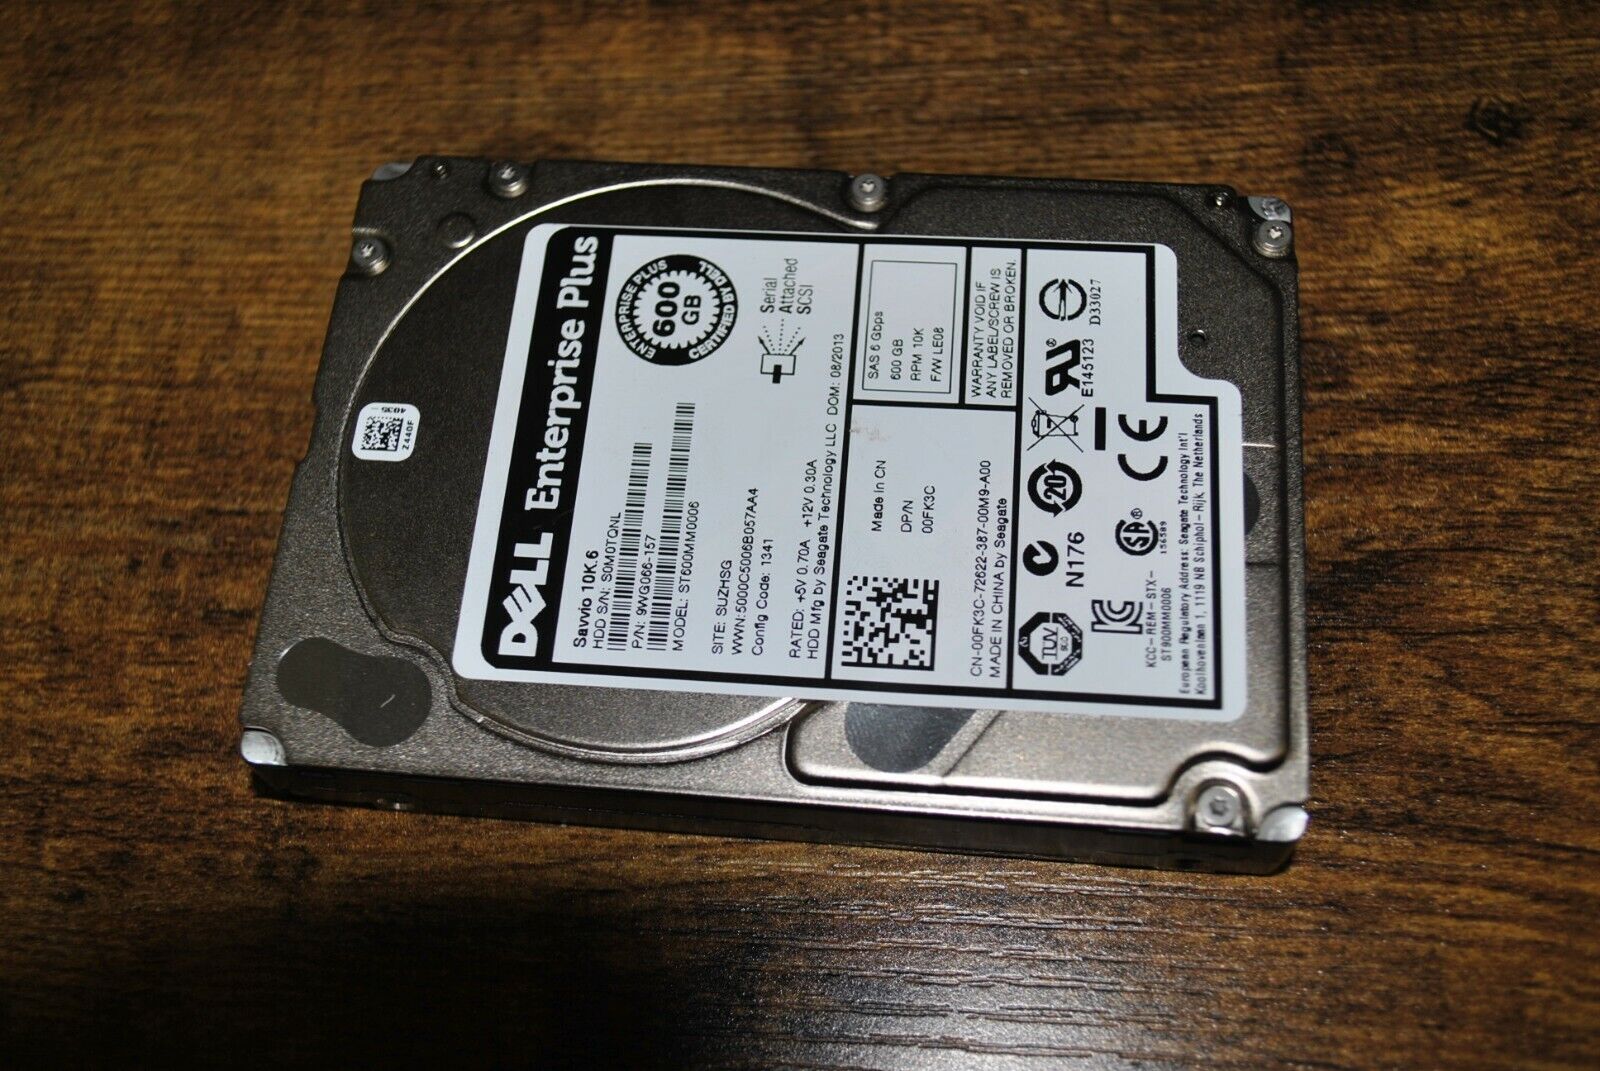 Dell EqualLogic 600GB 10K 2.5